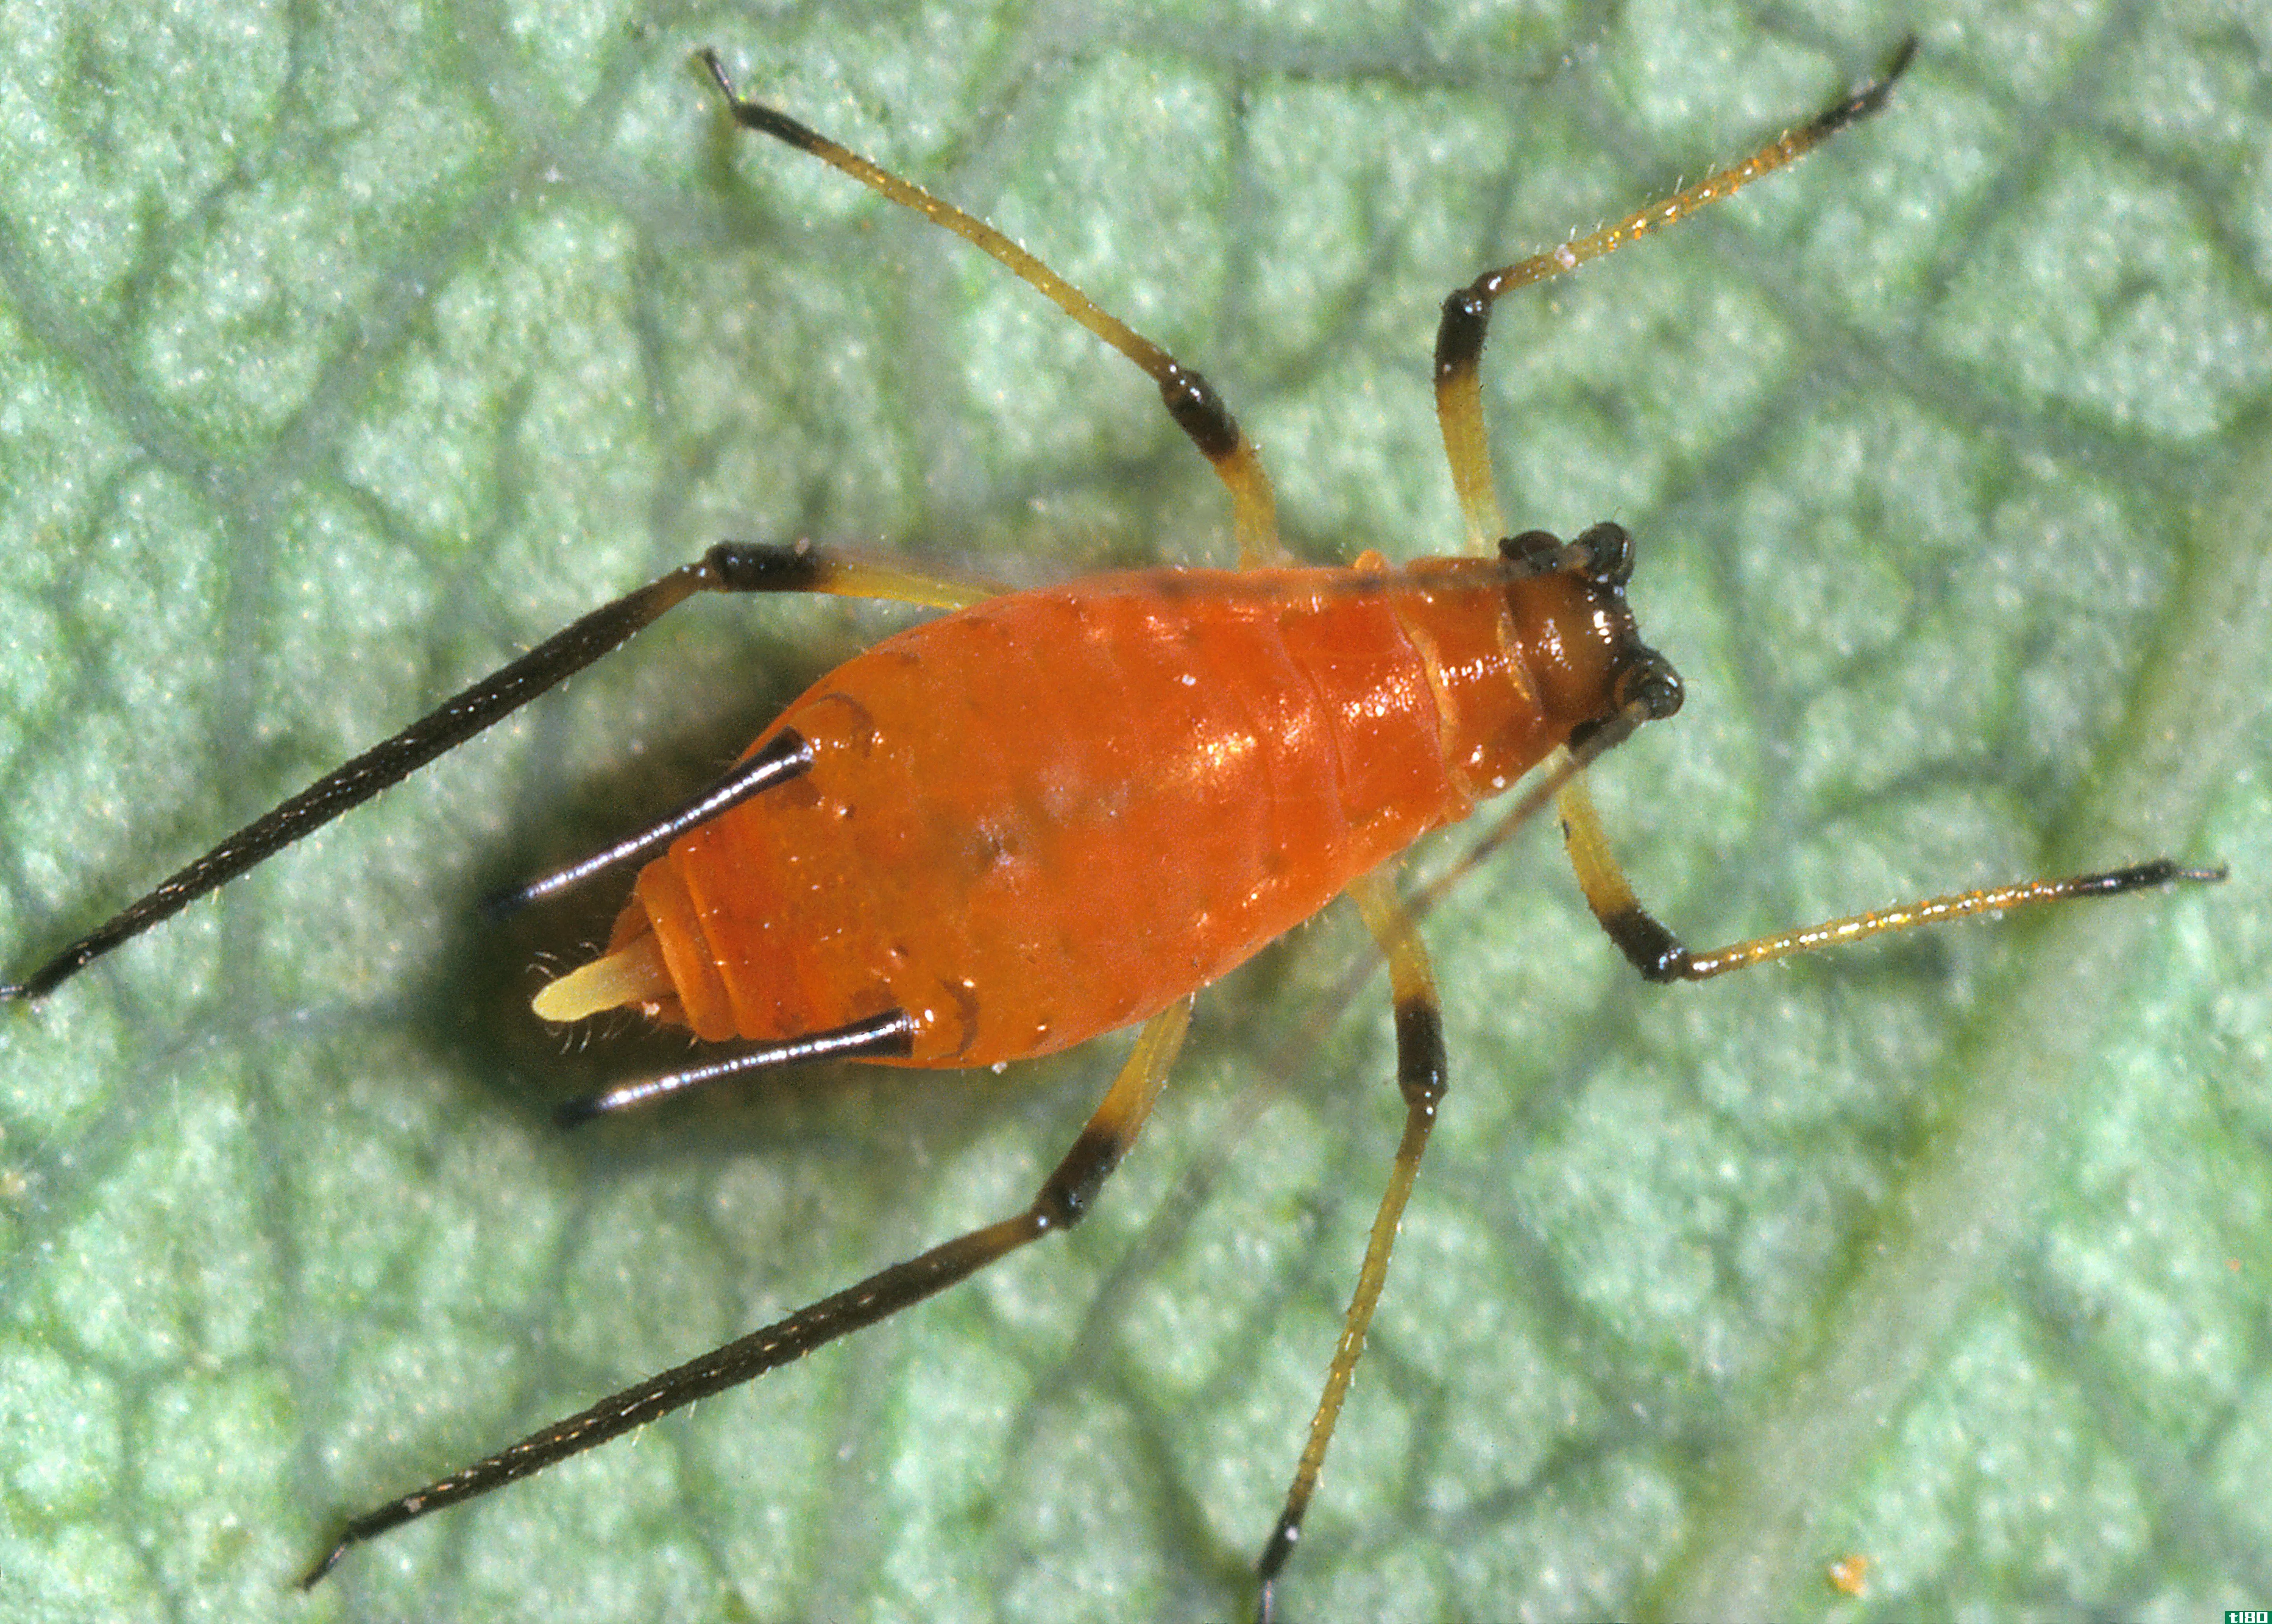 蚜虫(aphid)和贾西德(jassid)的区别